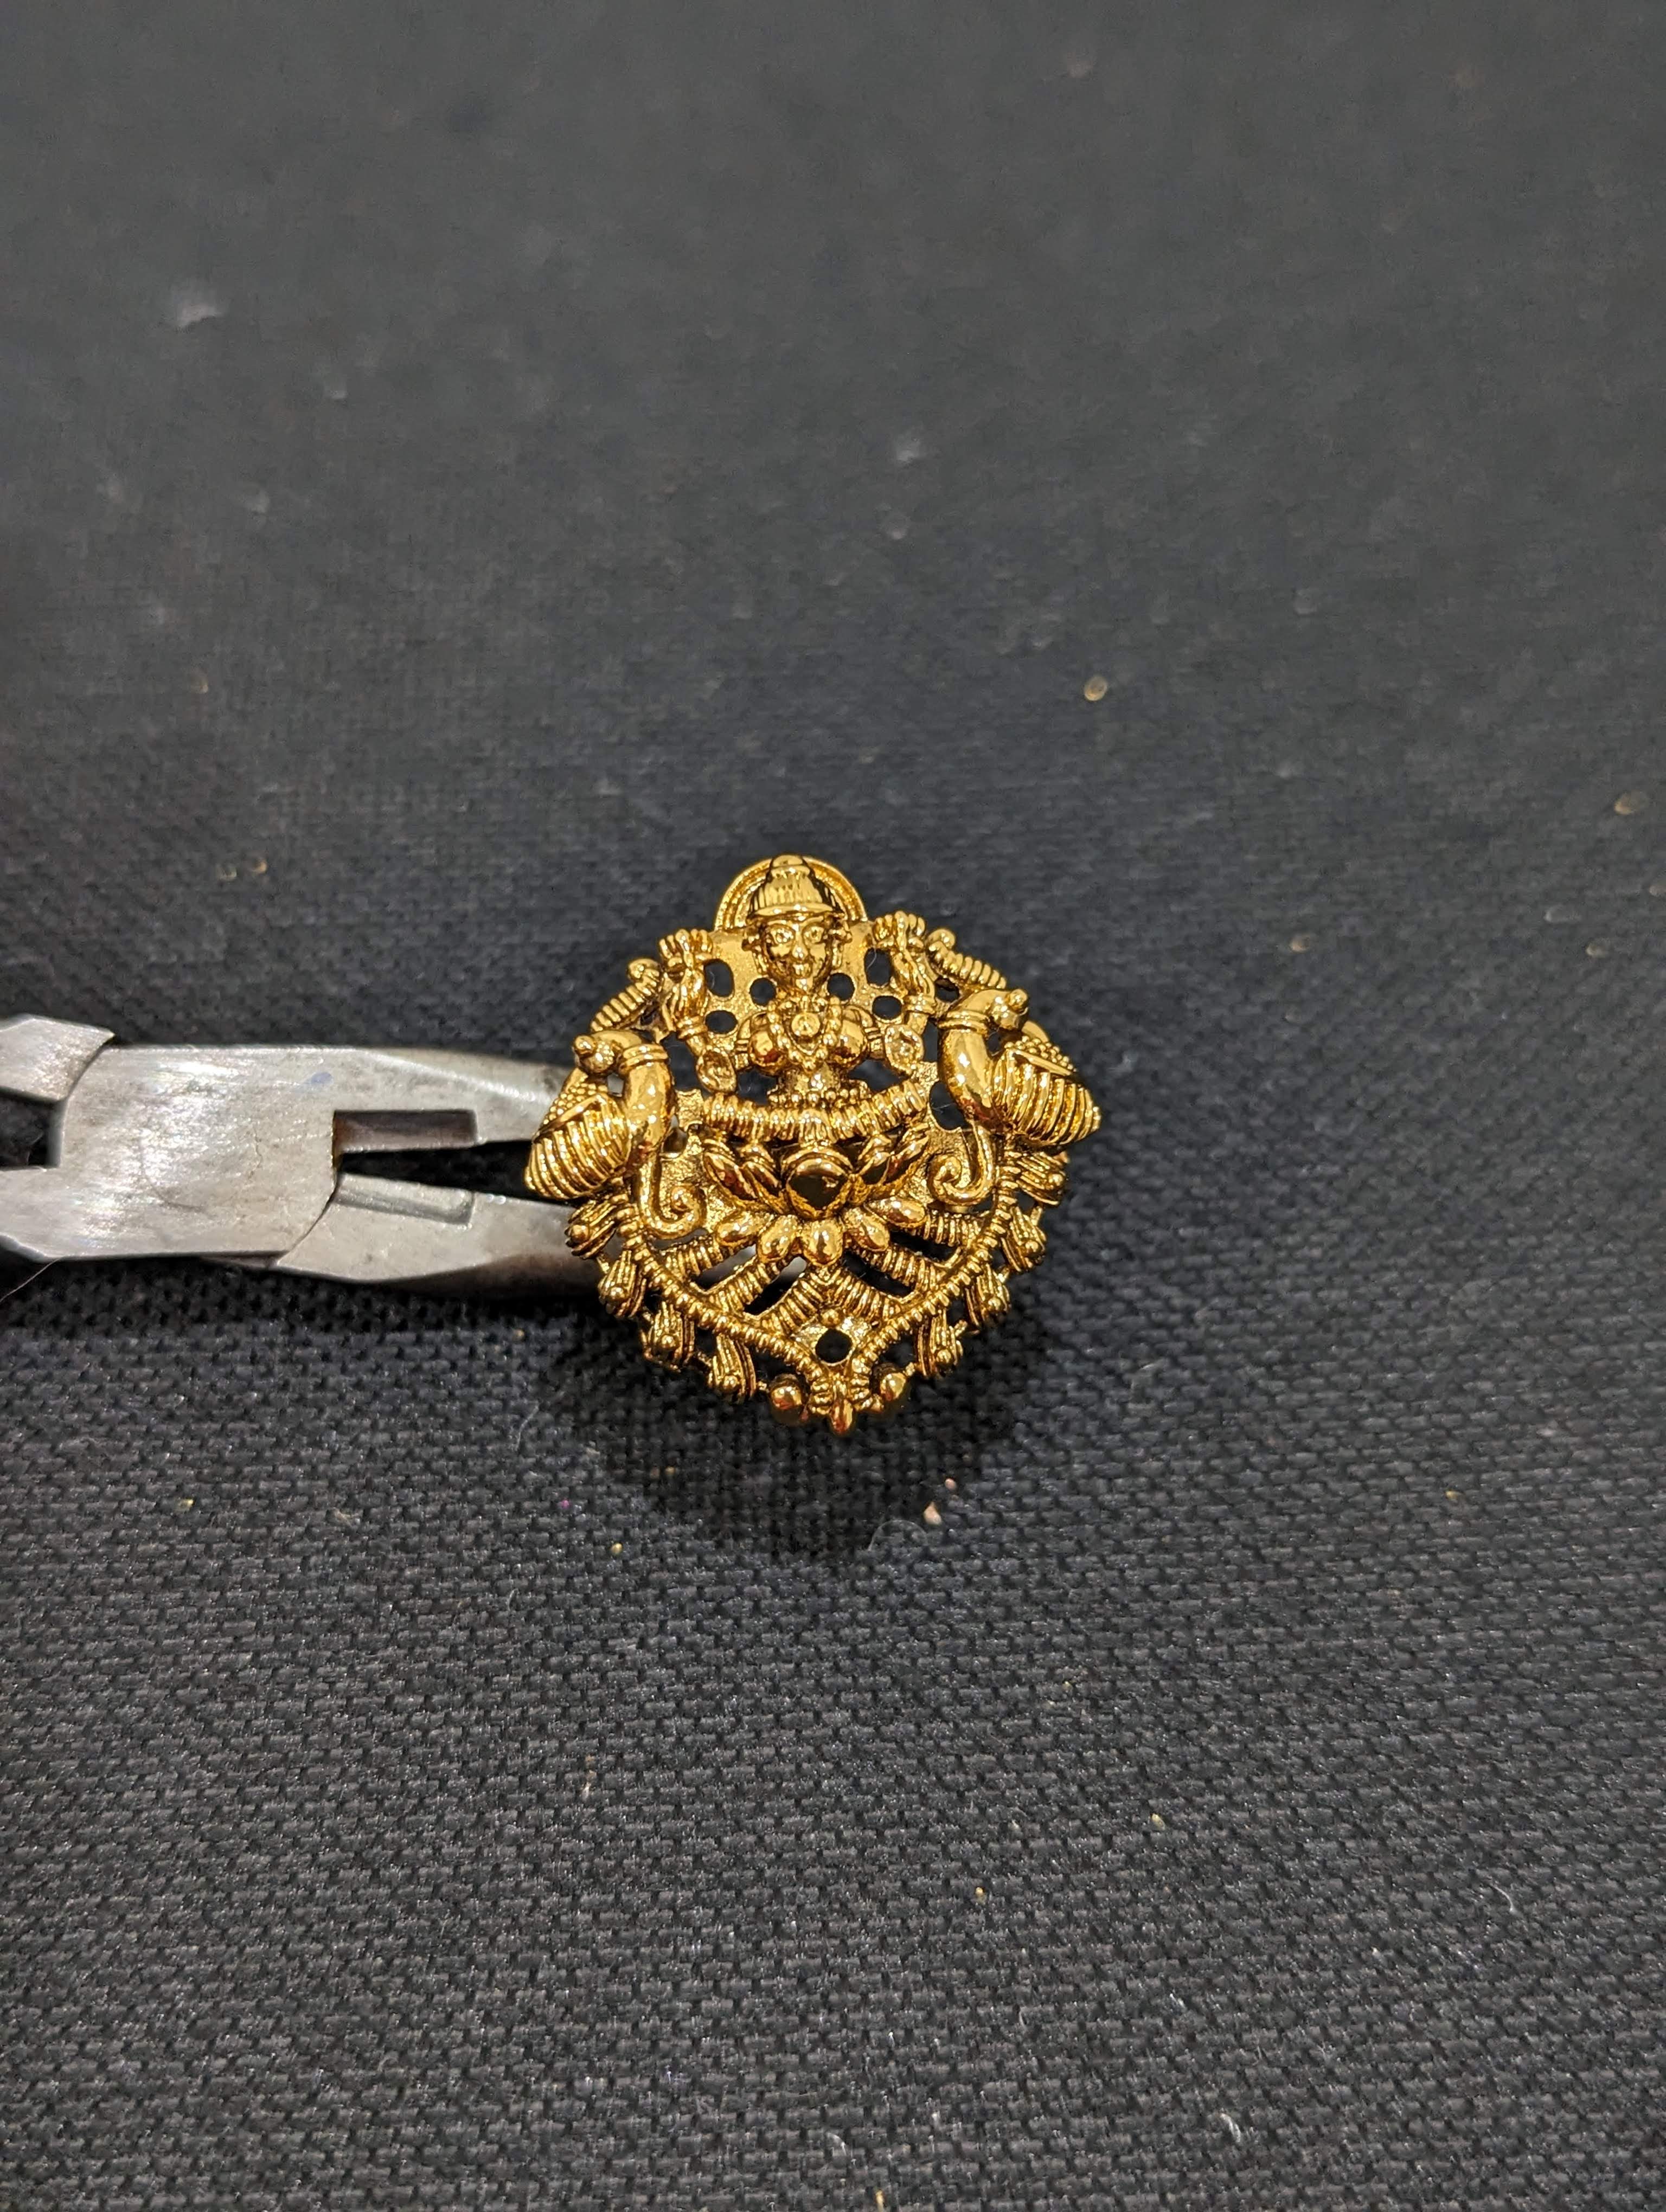 Full Finger Concept ring in 22K gold | eBay